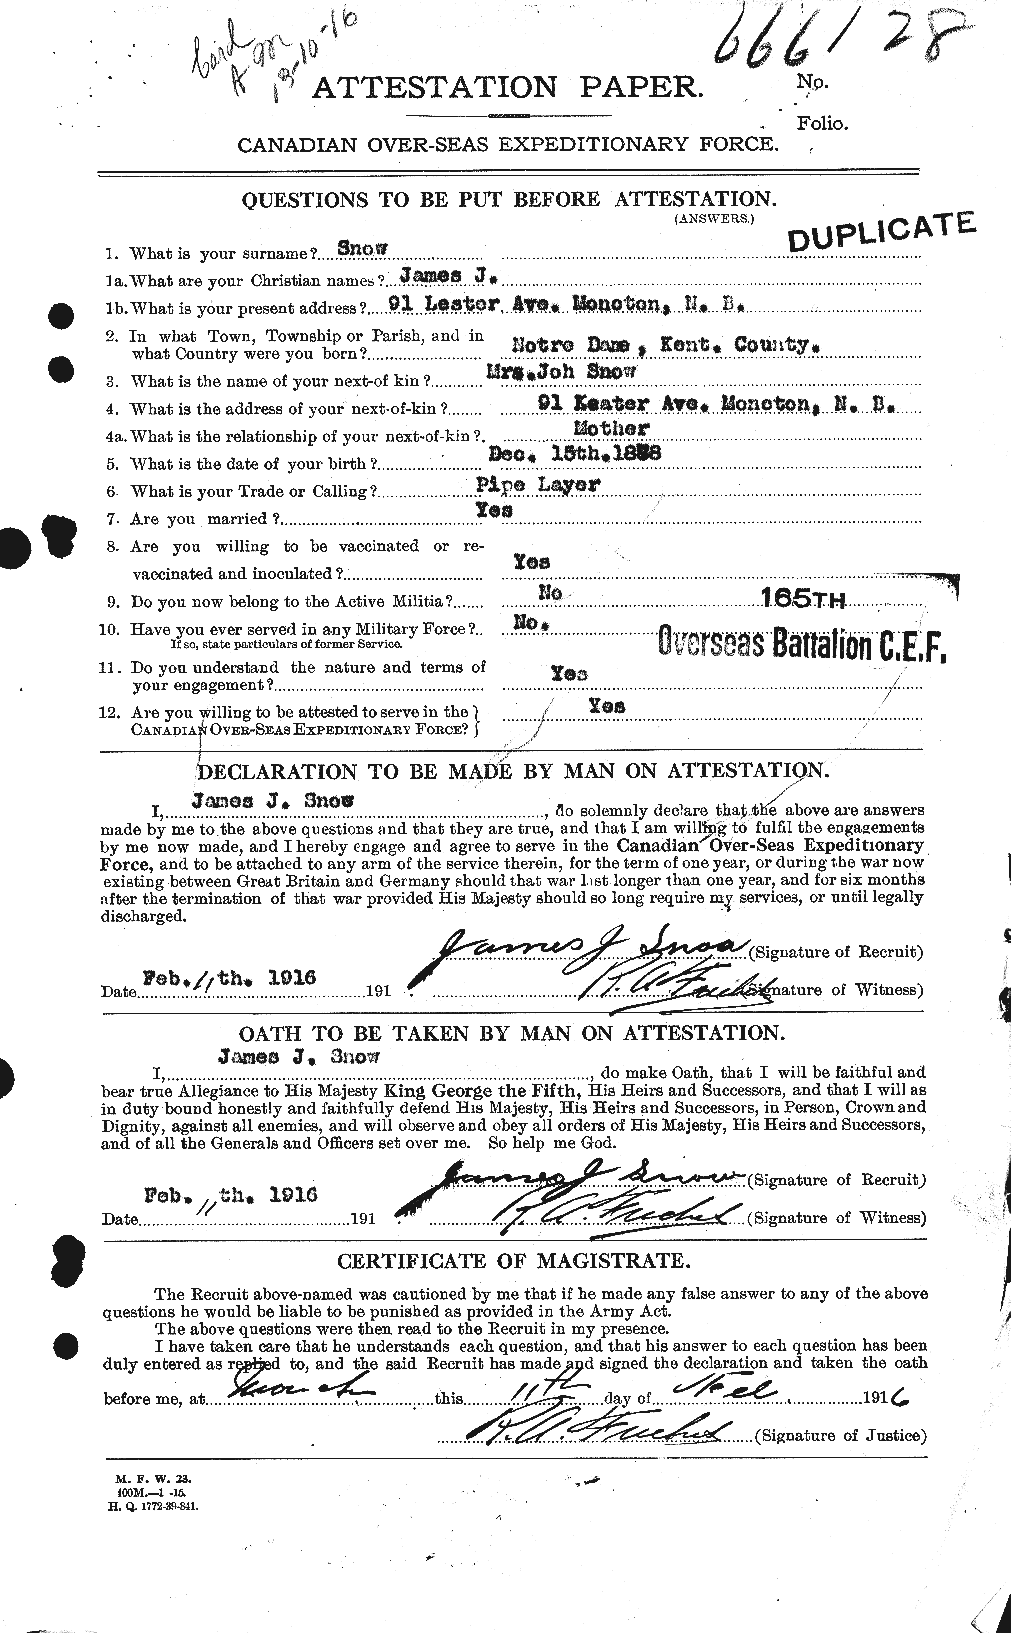 Dossiers du Personnel de la Première Guerre mondiale - CEC 108951a